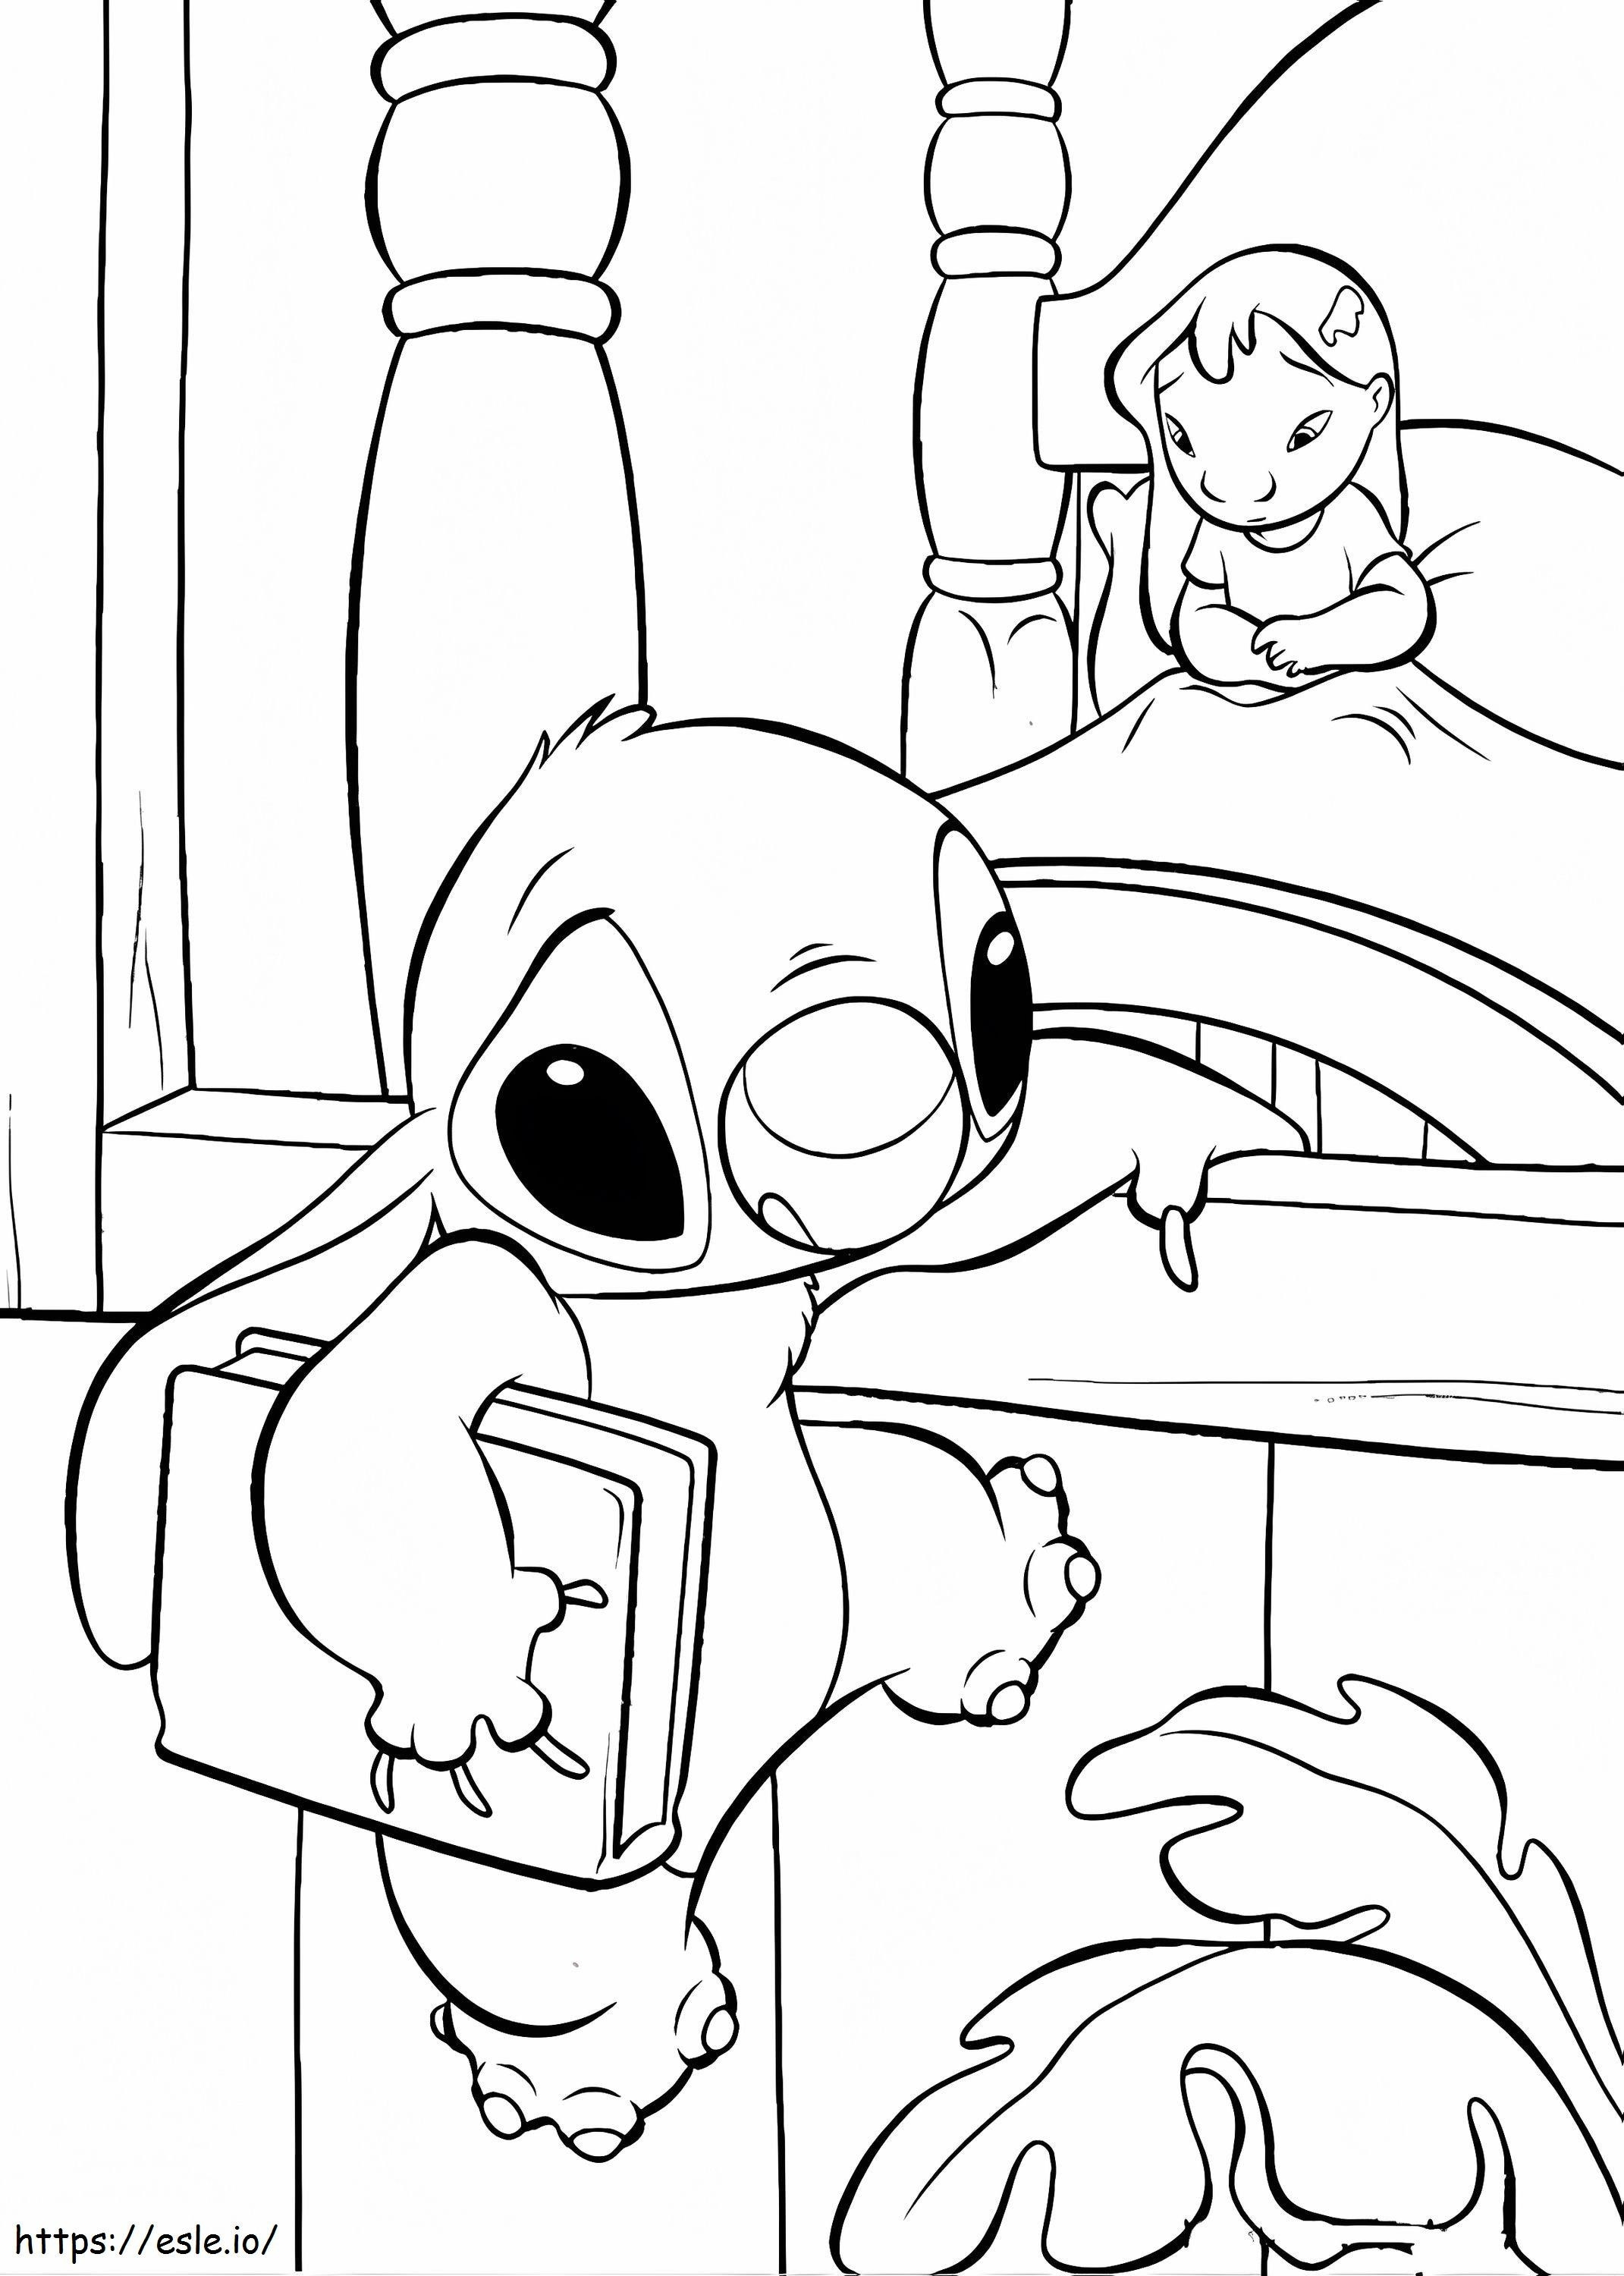 Stitch And Lilo Are Sad A4 coloring page